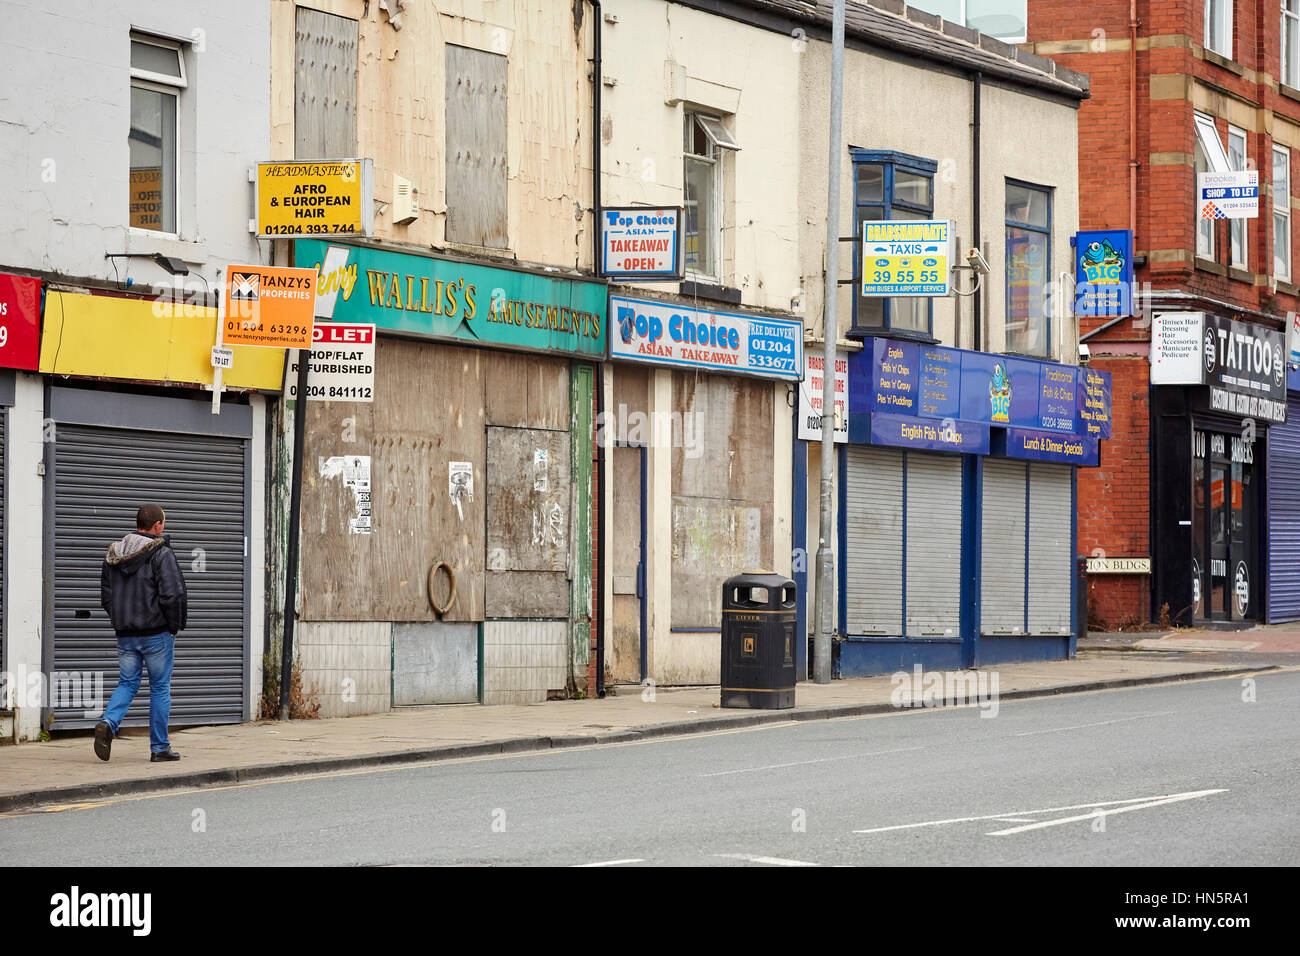 Una desacumulación cerradas y precintadas windows de minoristas independientes en una calle de casas adosadas en el centro de la ciudad de Bolton, Lancashire, Inglaterra, Reino Unido. Foto de stock